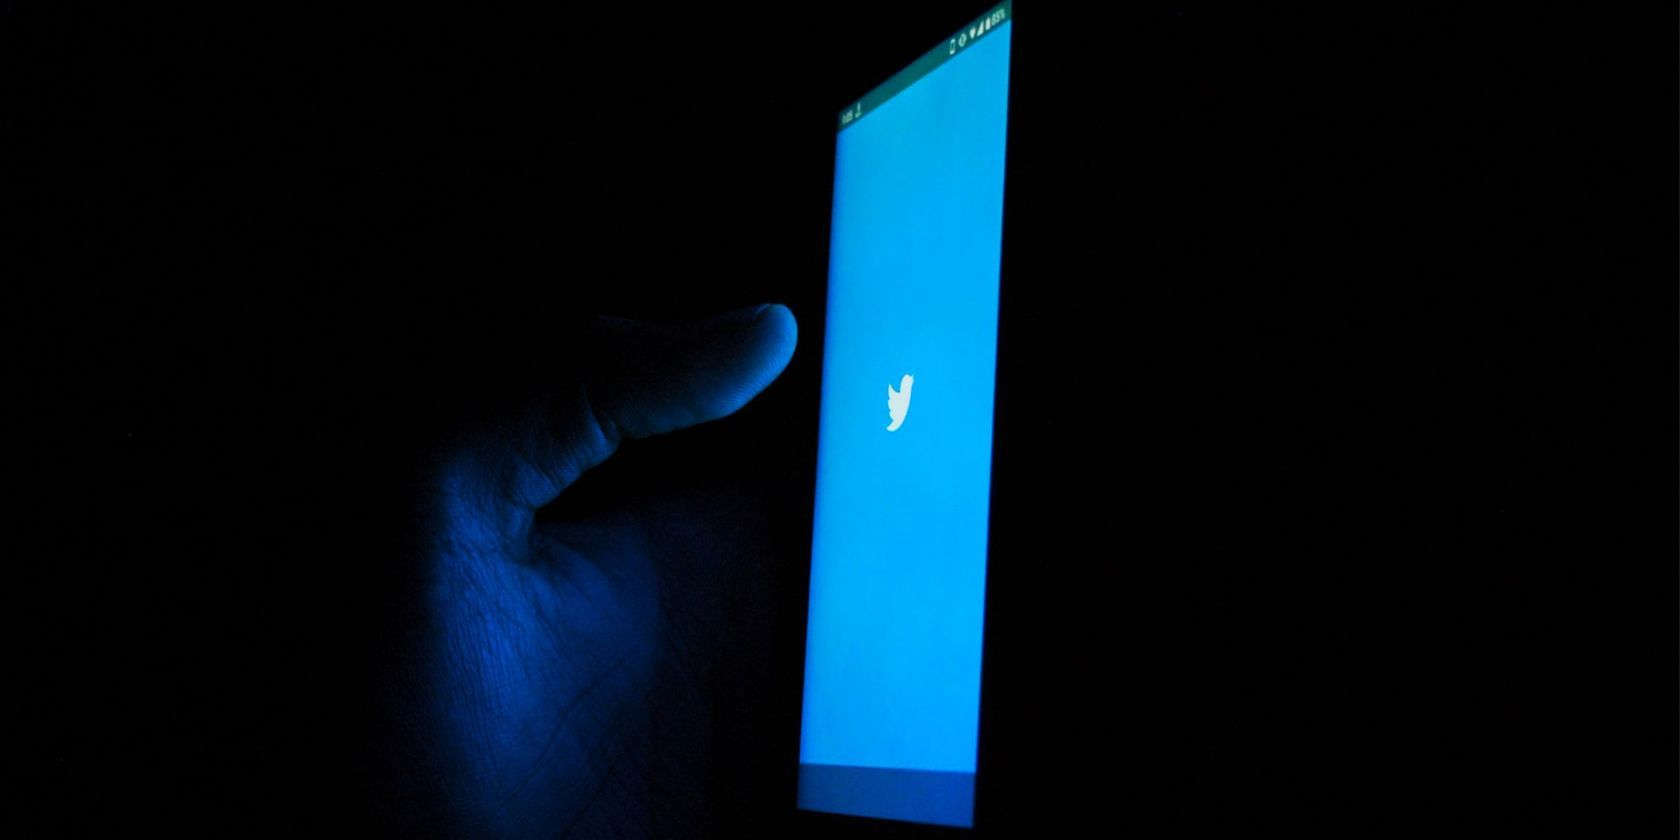 twitter app open on phone in dark room